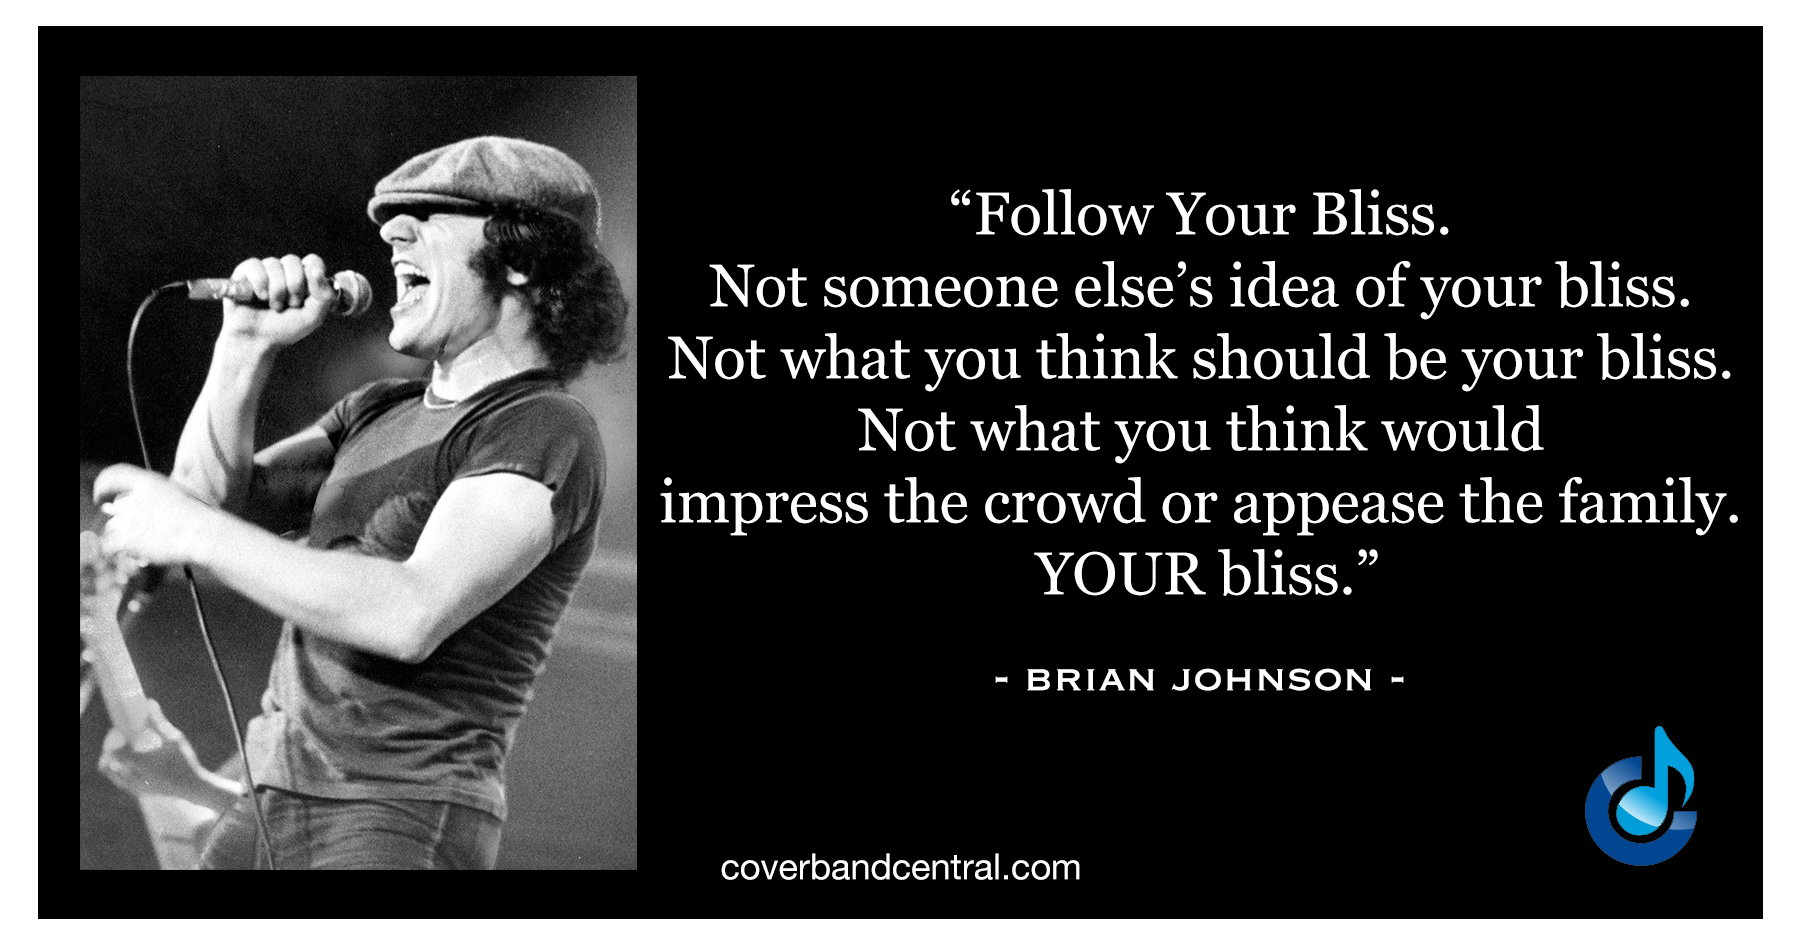 Brian Johnson quote